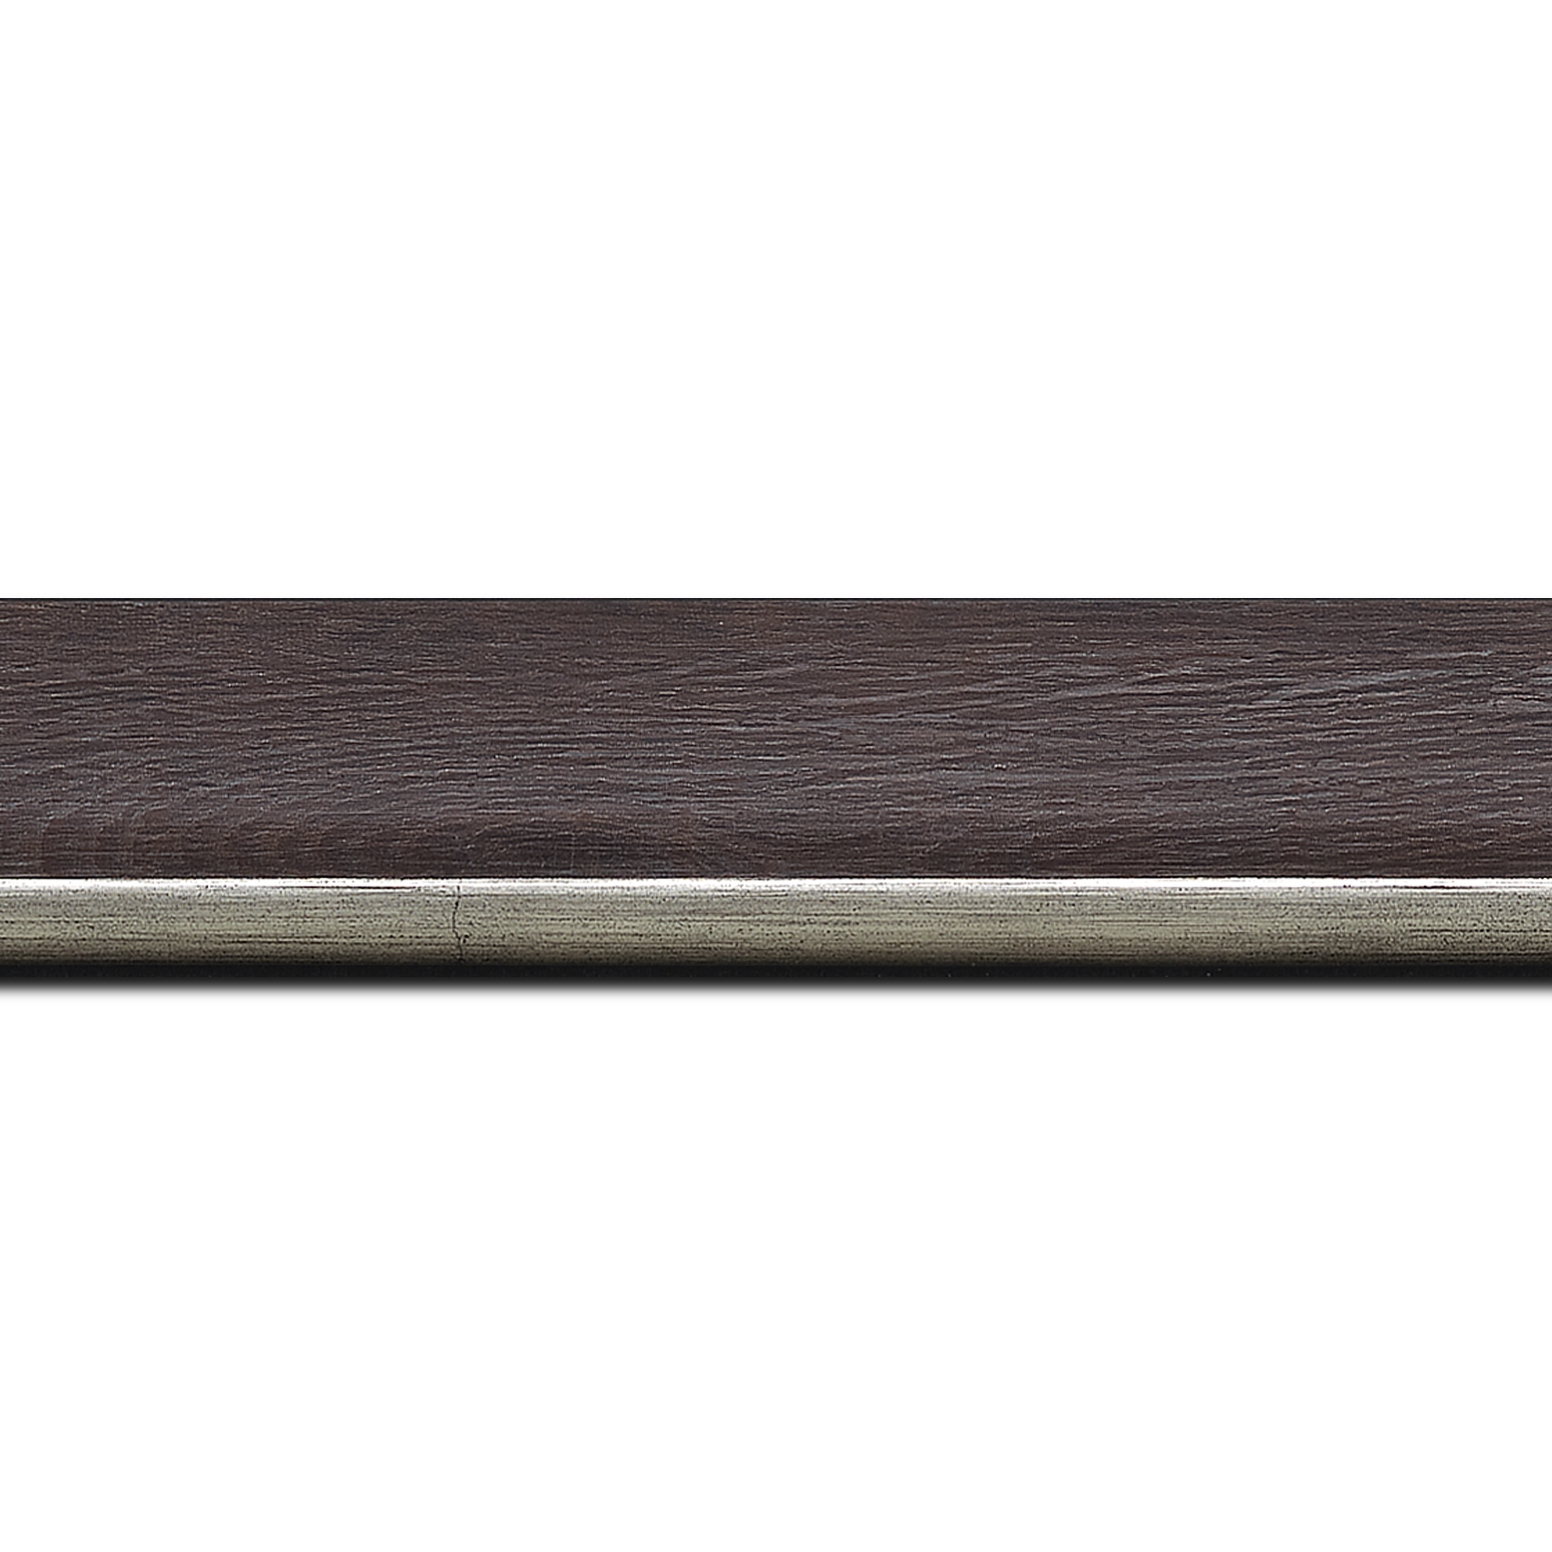 Baguette longueur 1.40m bois profil plat en pente largeur 3.5cm de couleur ton bois veiné teinté marron foncé filet argent chaud